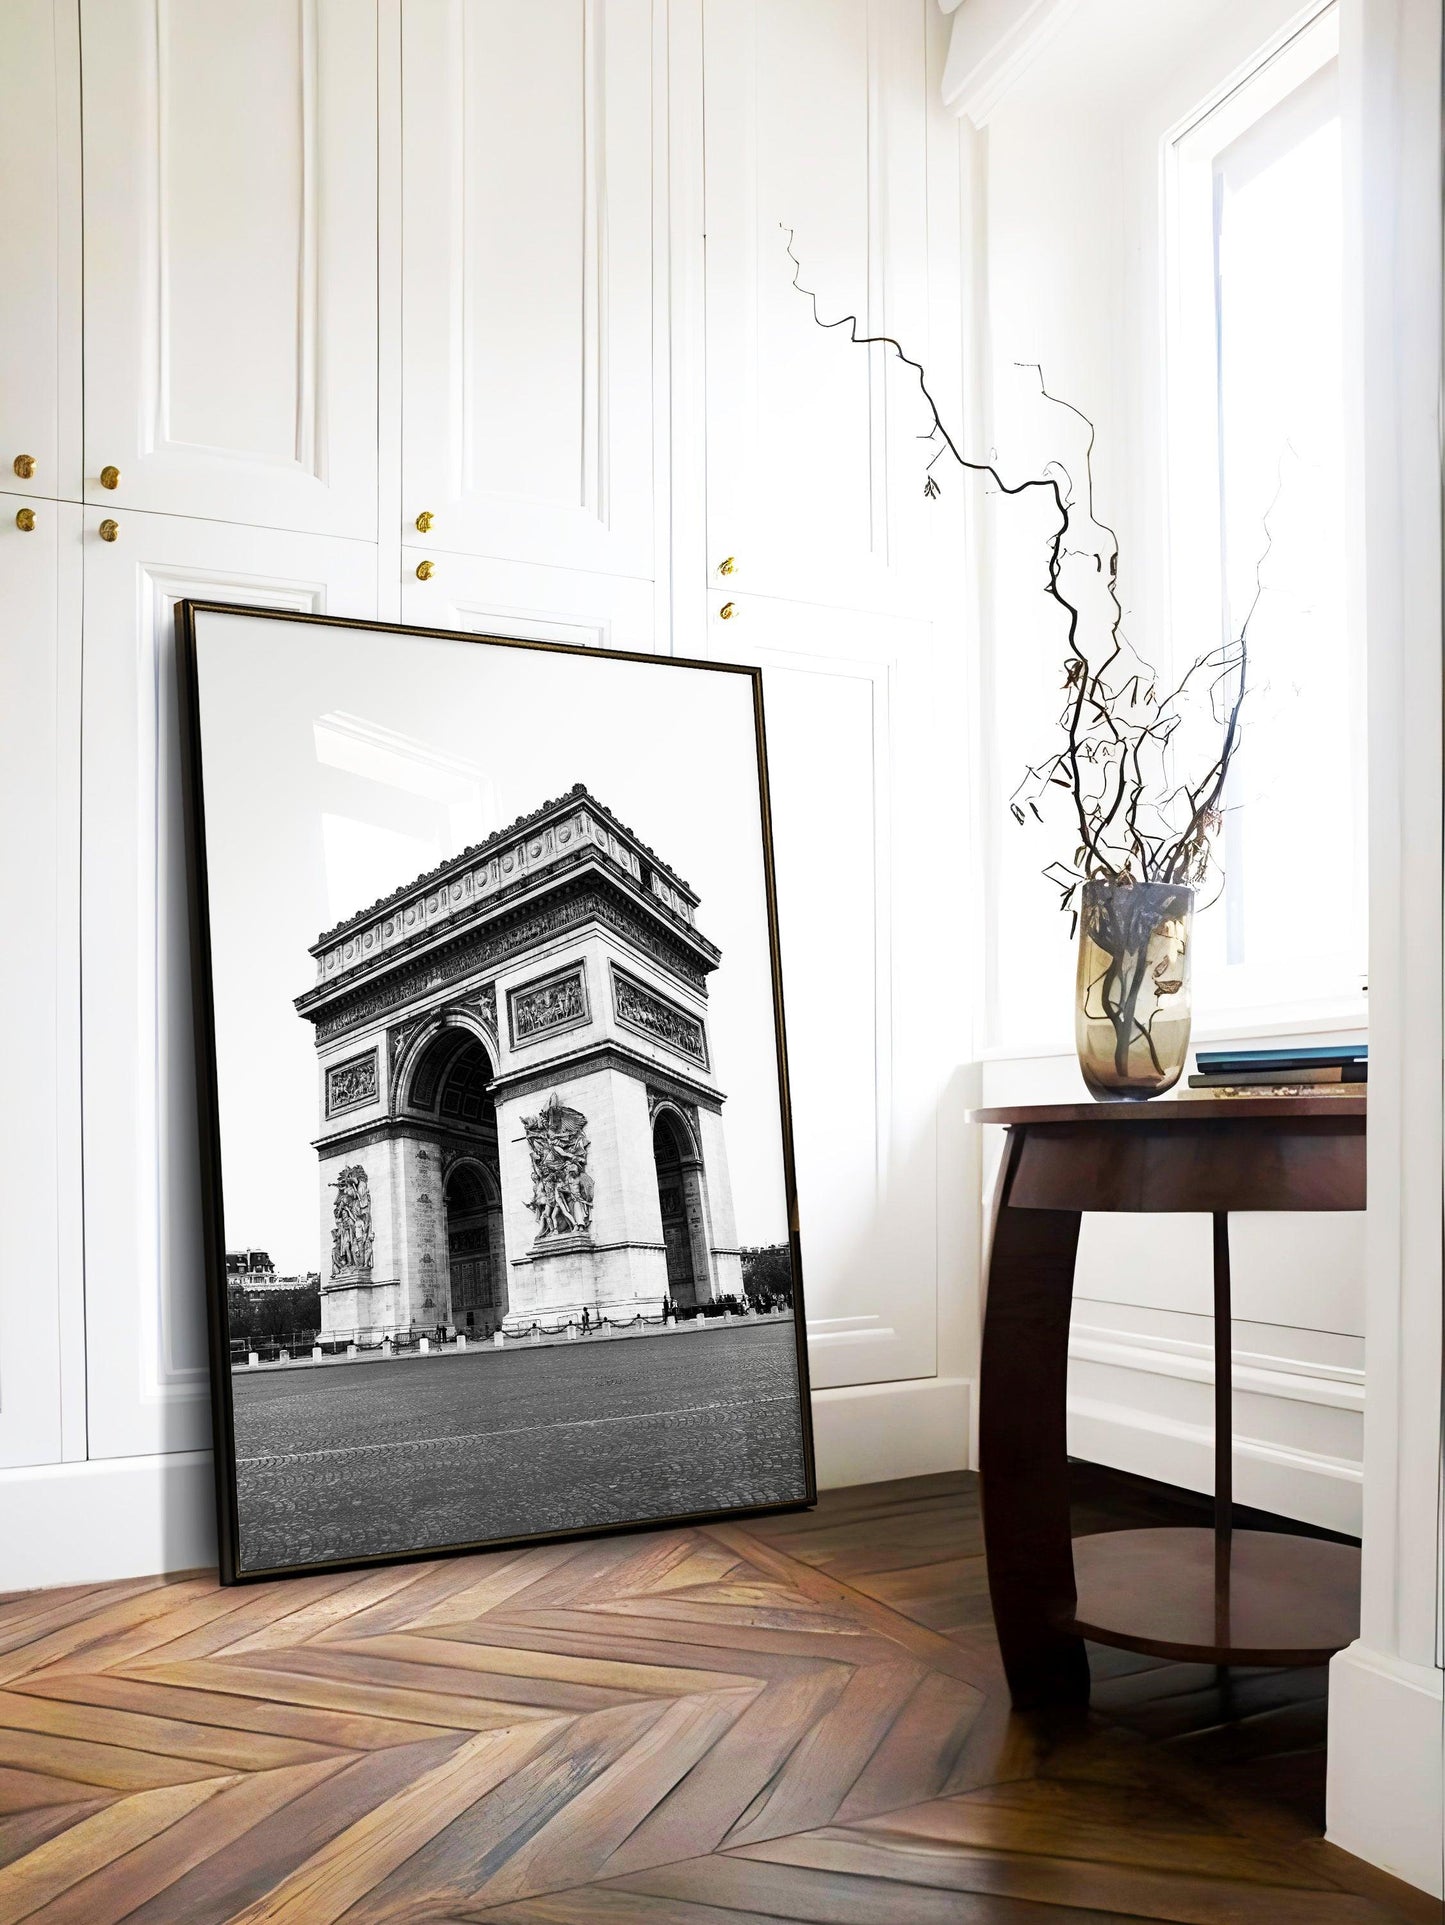 Black and White Arc de Triomphe II | Paris Photography Print - Departures Print Shop